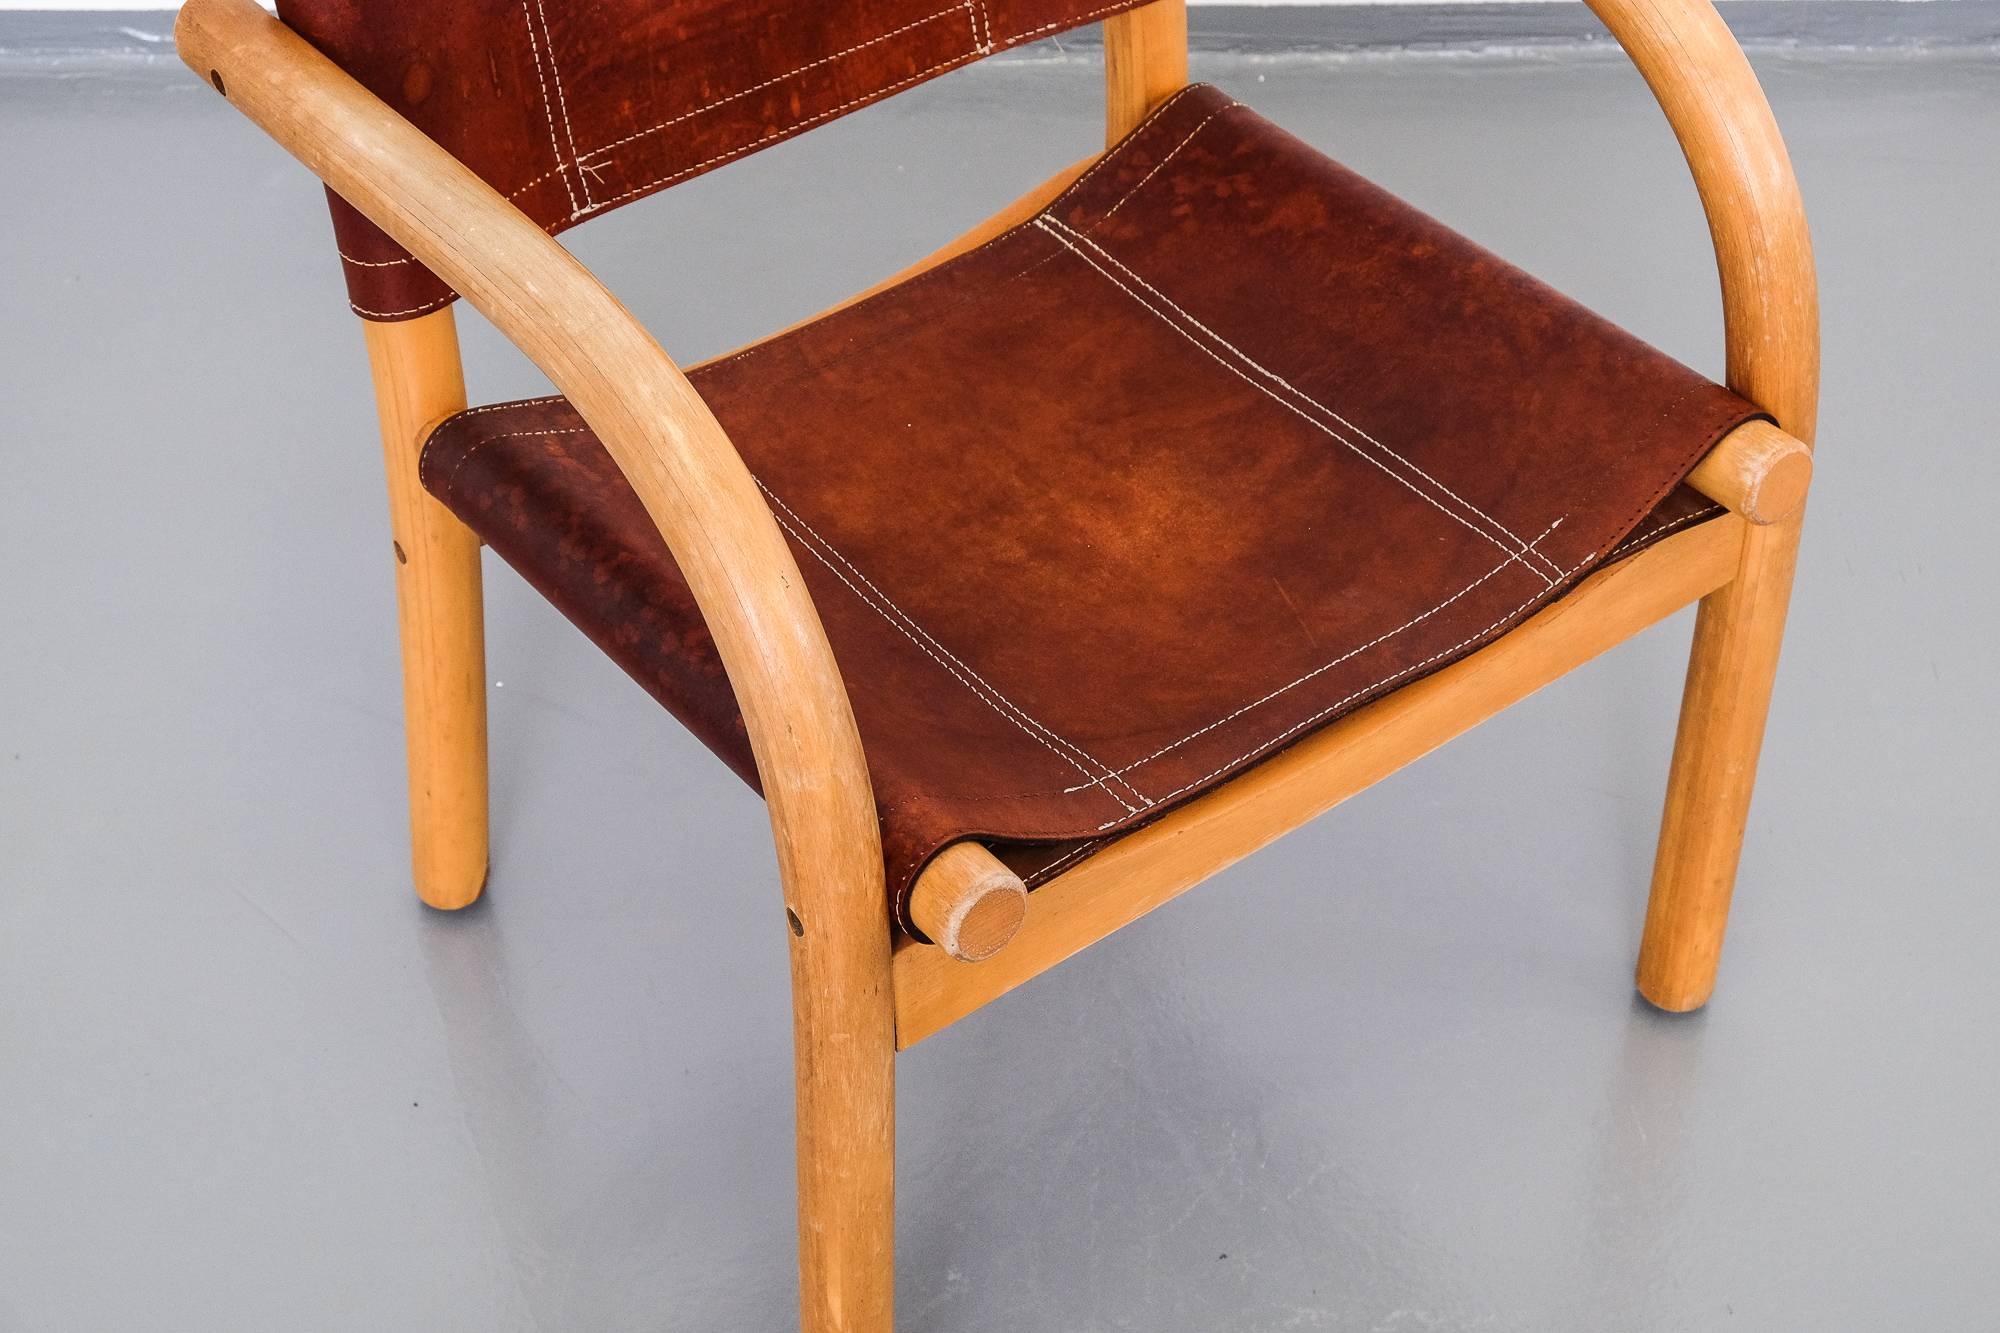 Scandinavian Modern 1970s Safari Chair 411 by Ben af Schultén for Artek 6